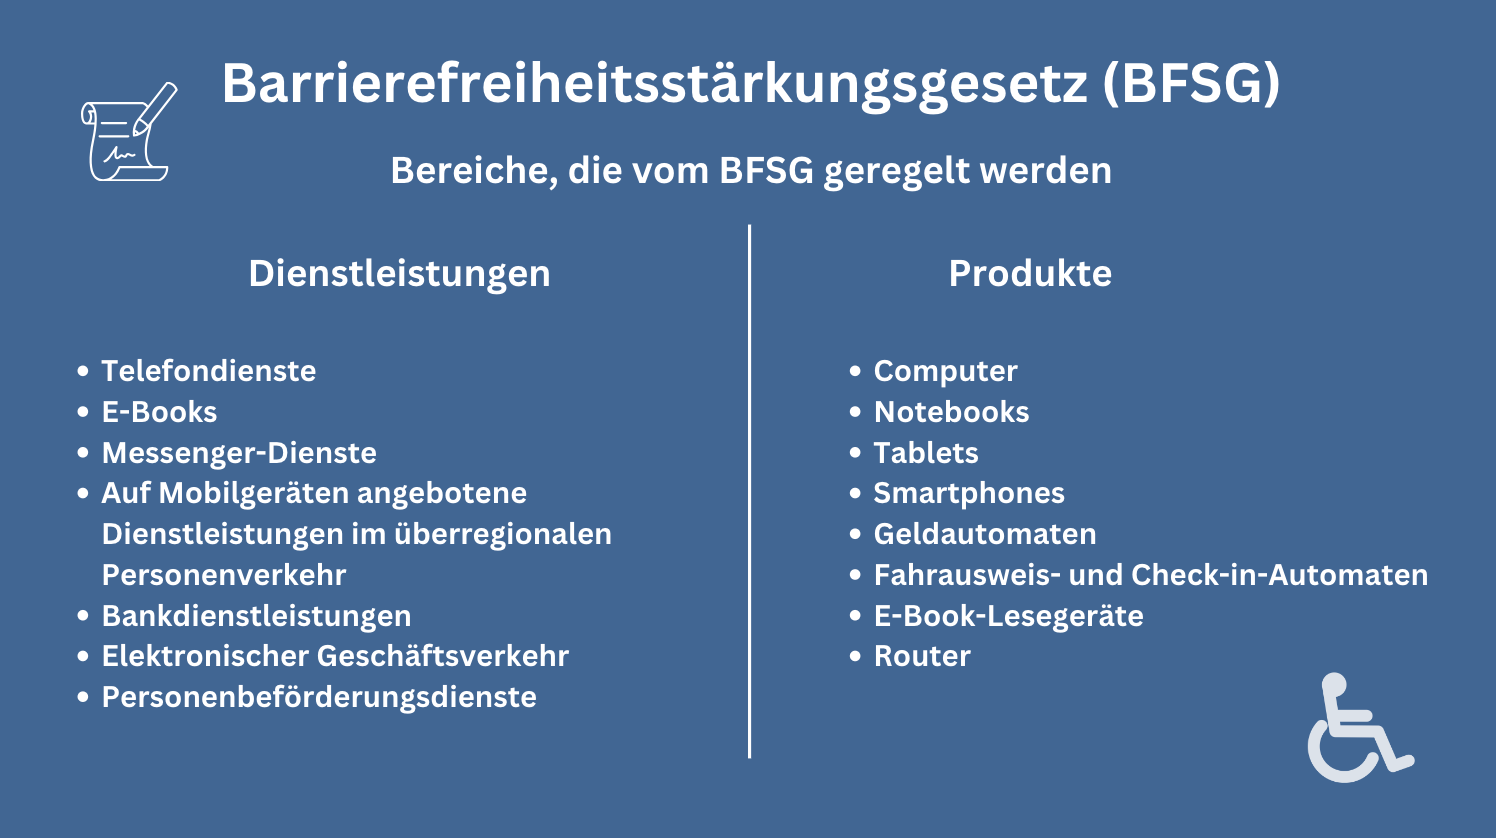 BFSG (Barrierefreiheitsstärkungsgesetz) Regelungsbereiche